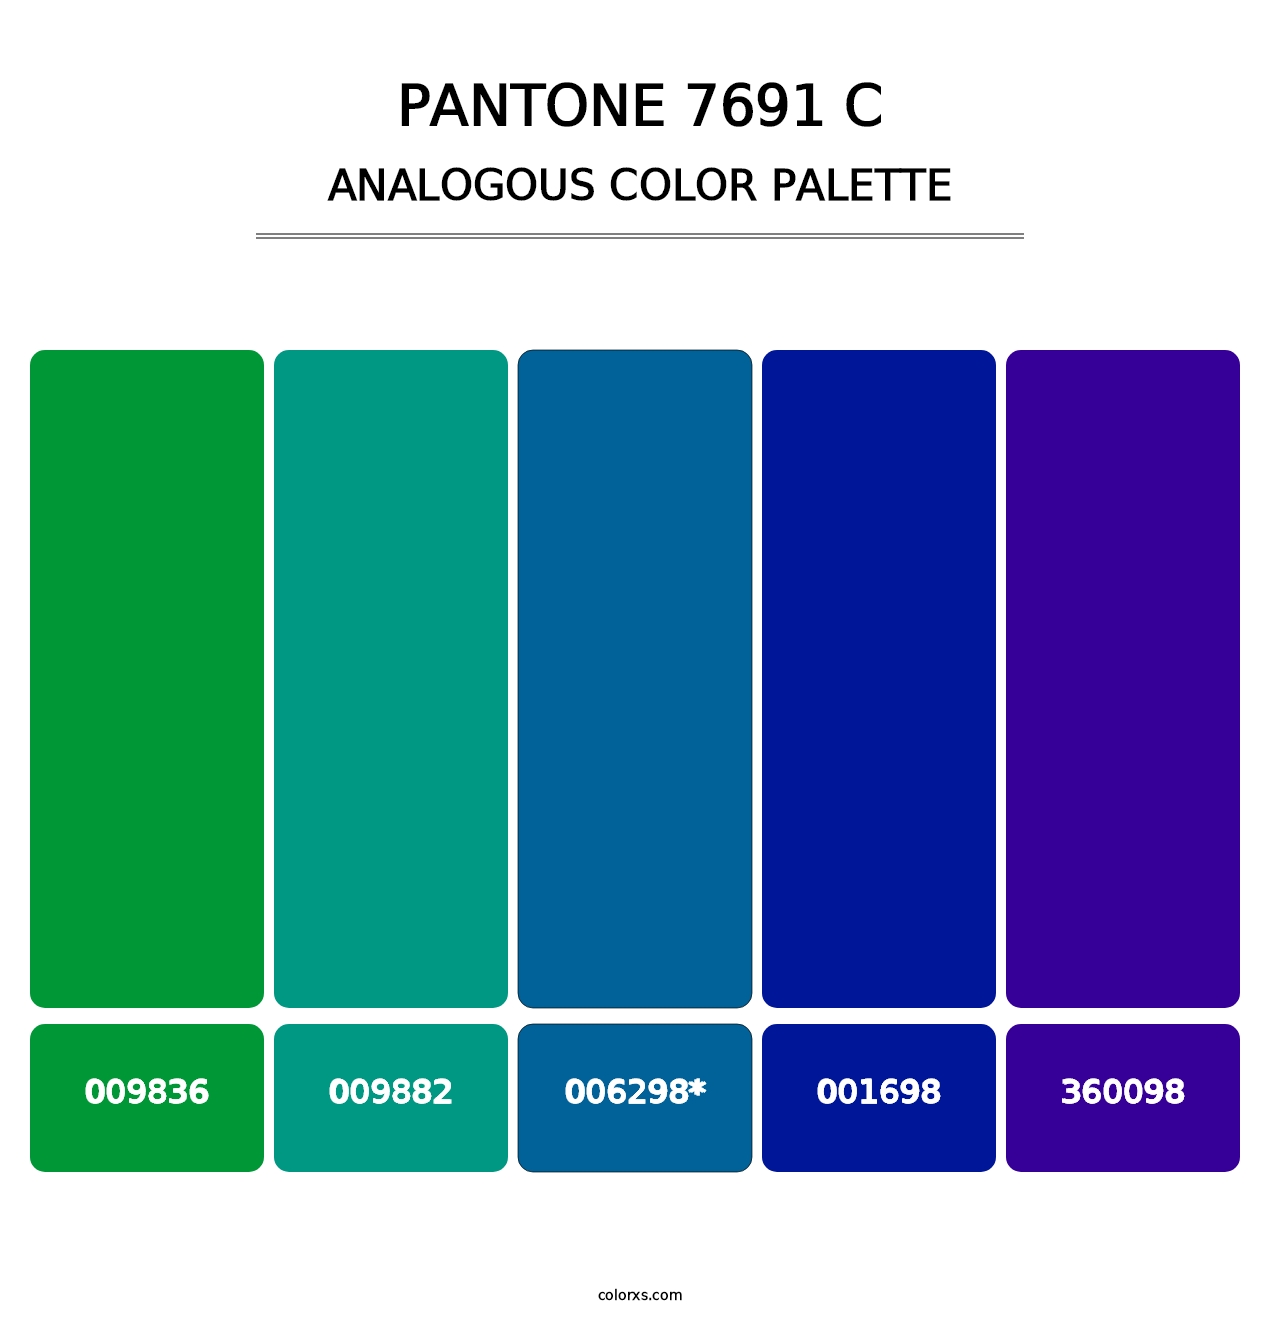 PANTONE 7691 C - Analogous Color Palette